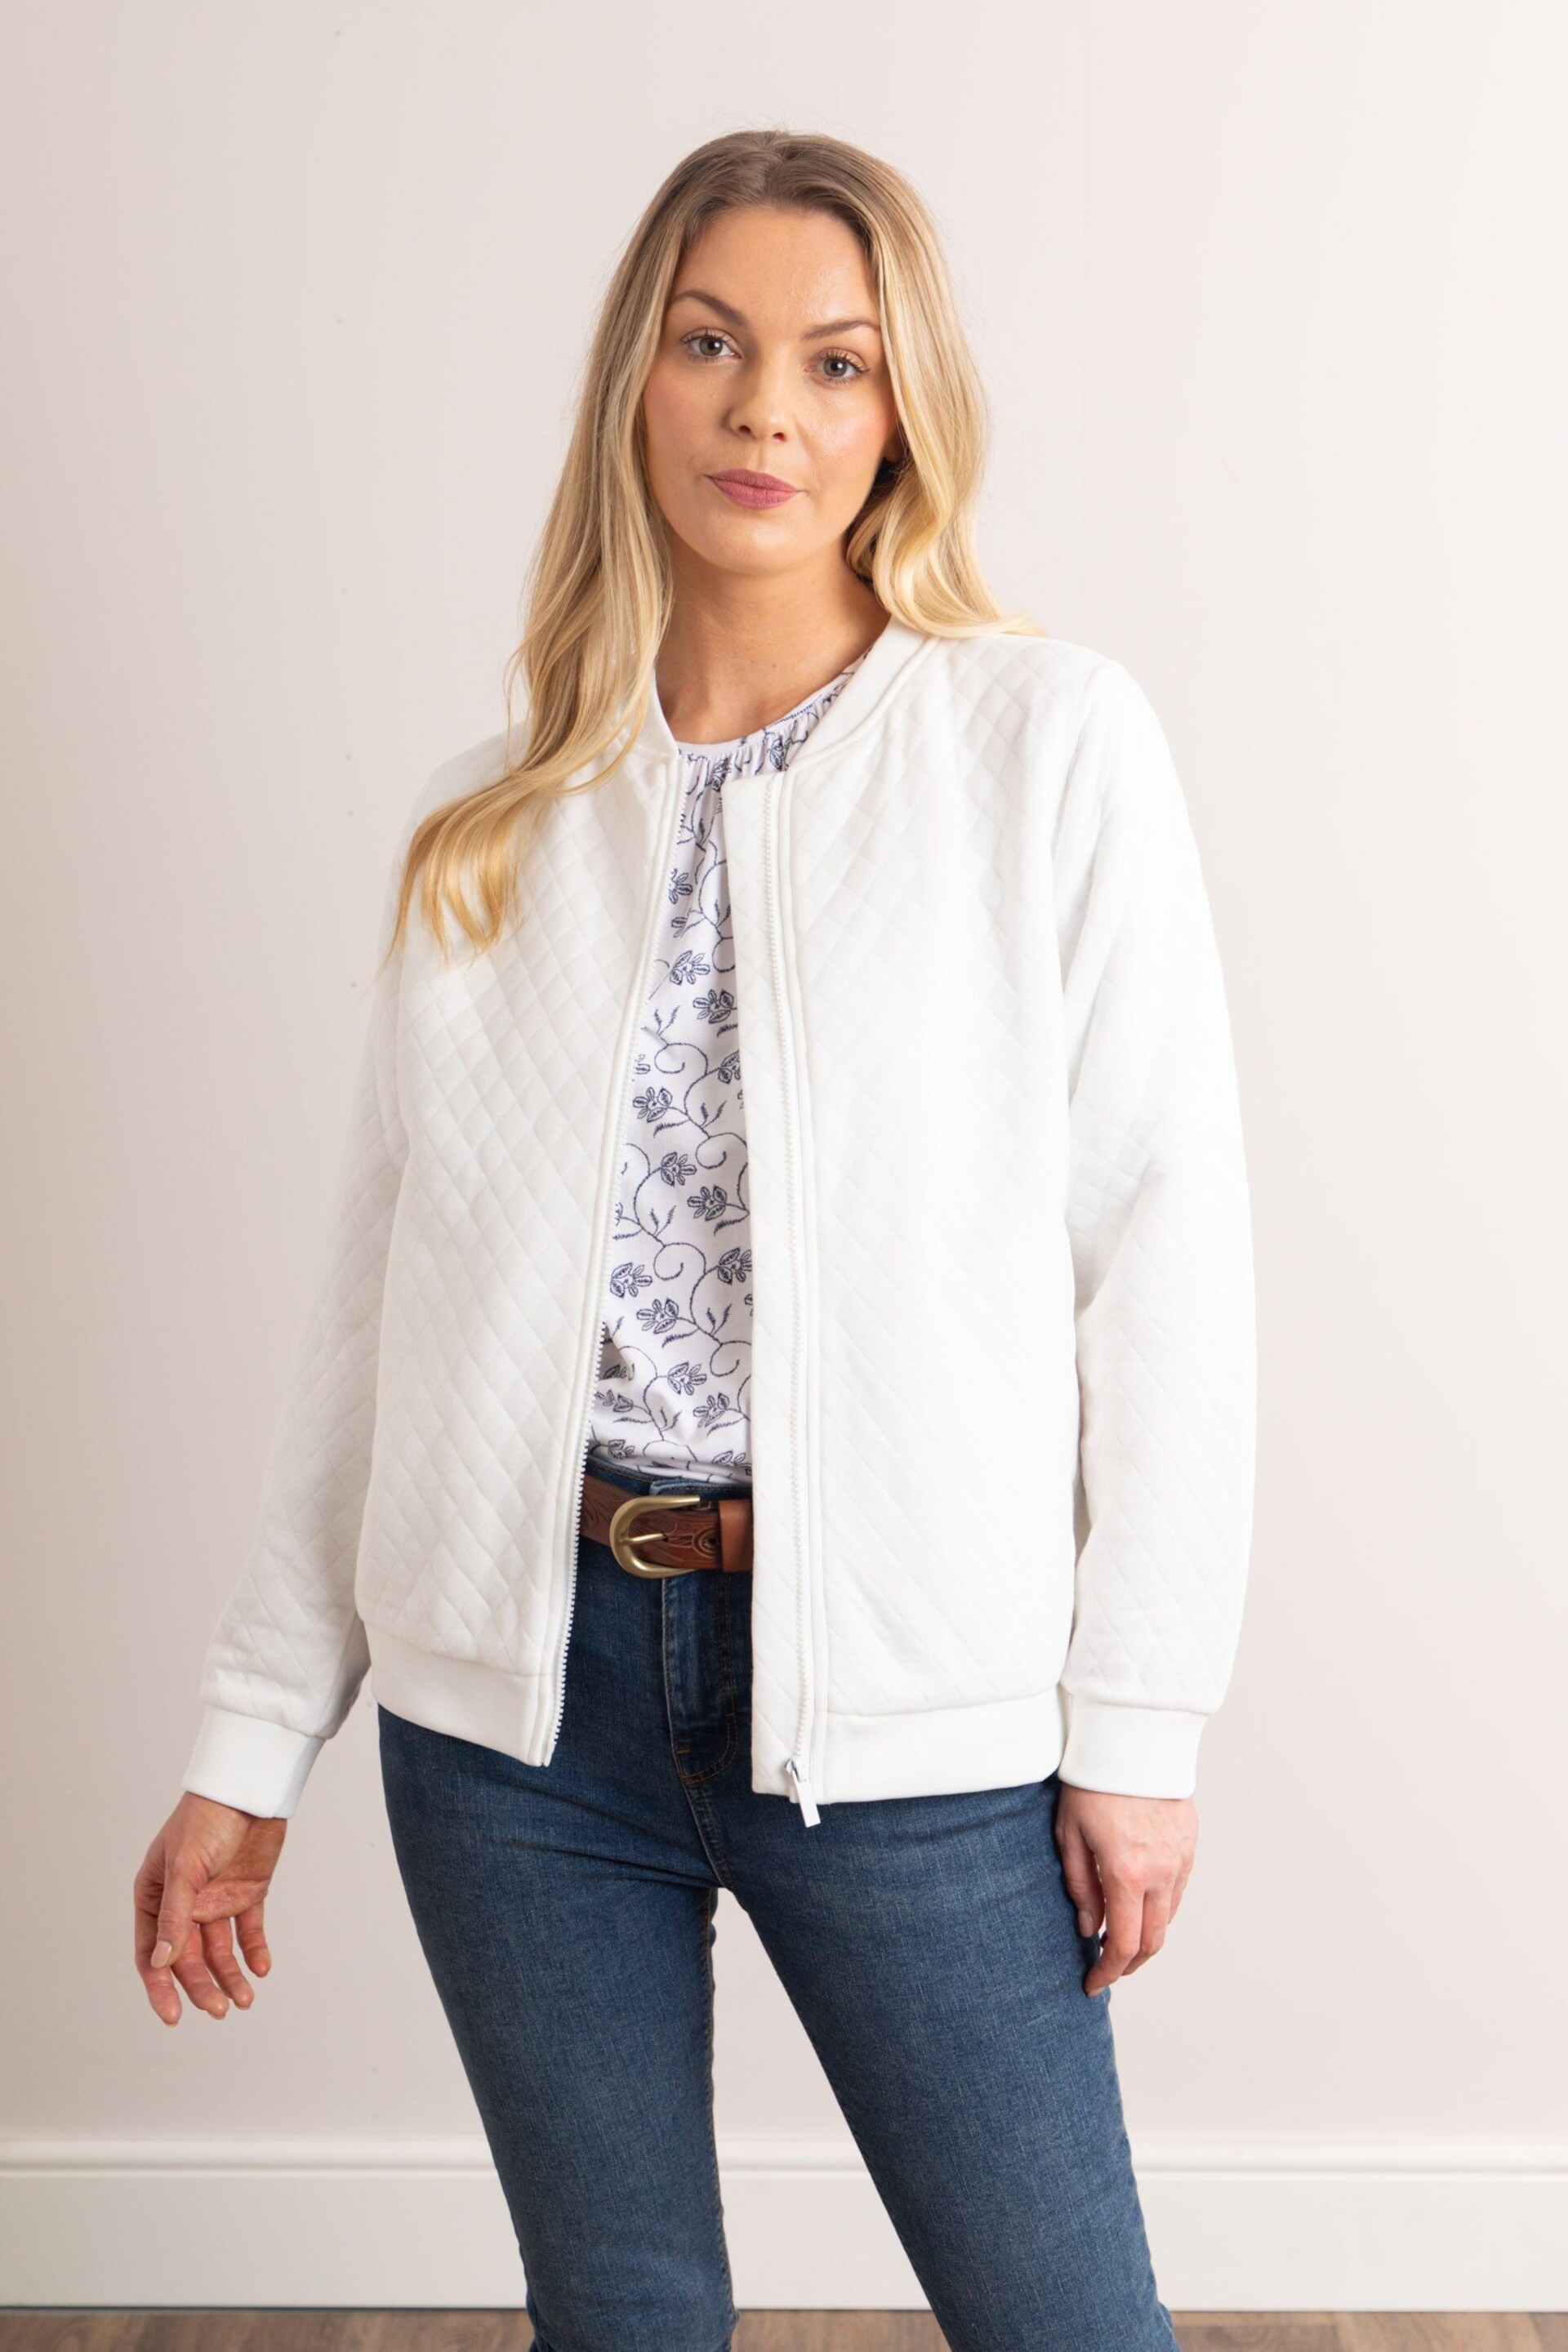 Lakeland Clothing Marissa Jersey Quilted White Bomber Jacket - Image 4 of 8